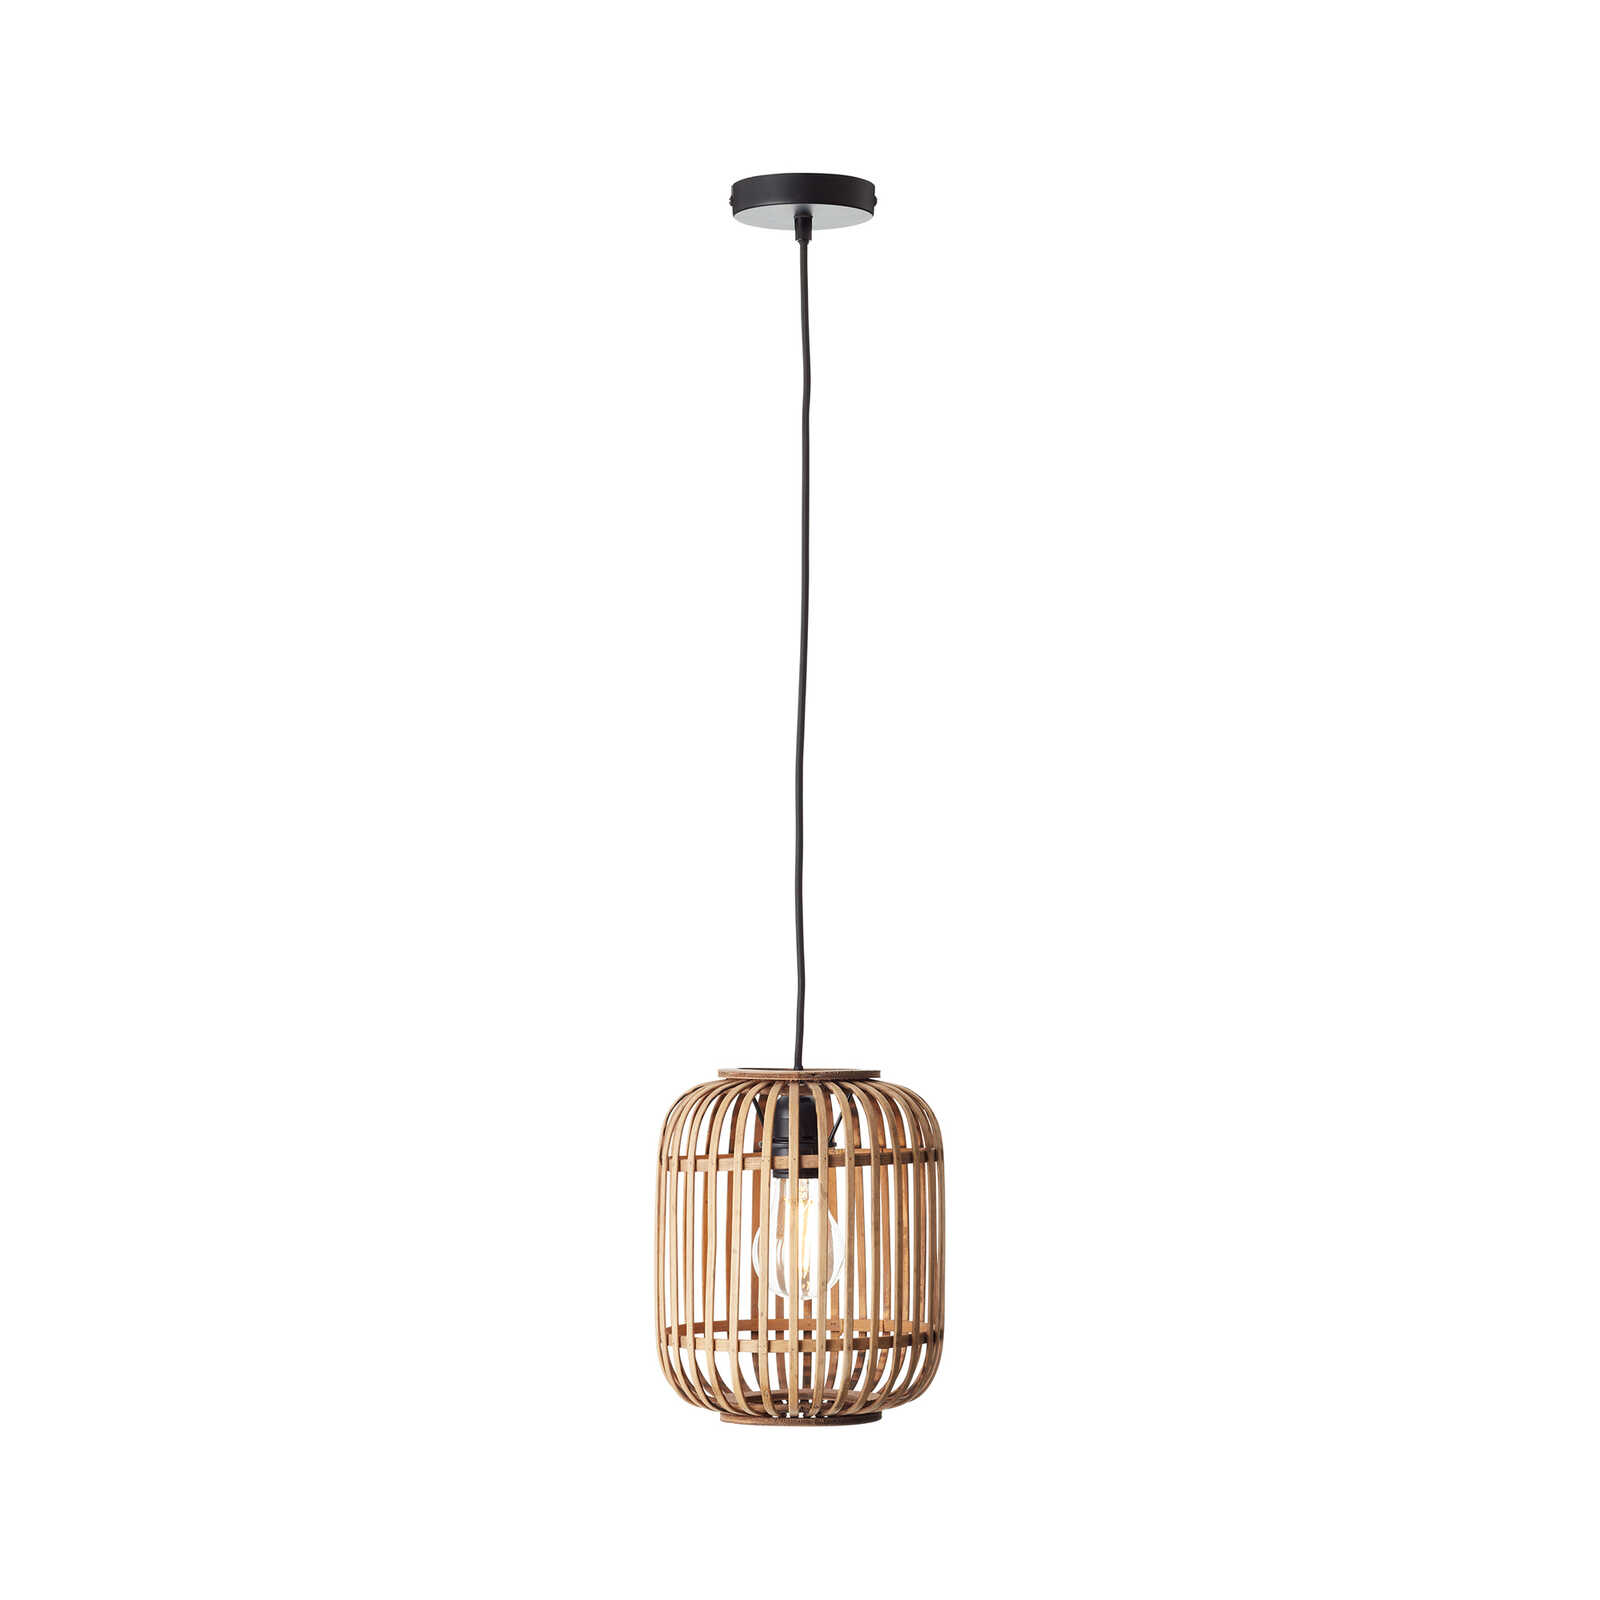 Metalen hanglamp - Willi 16 - Bruin
